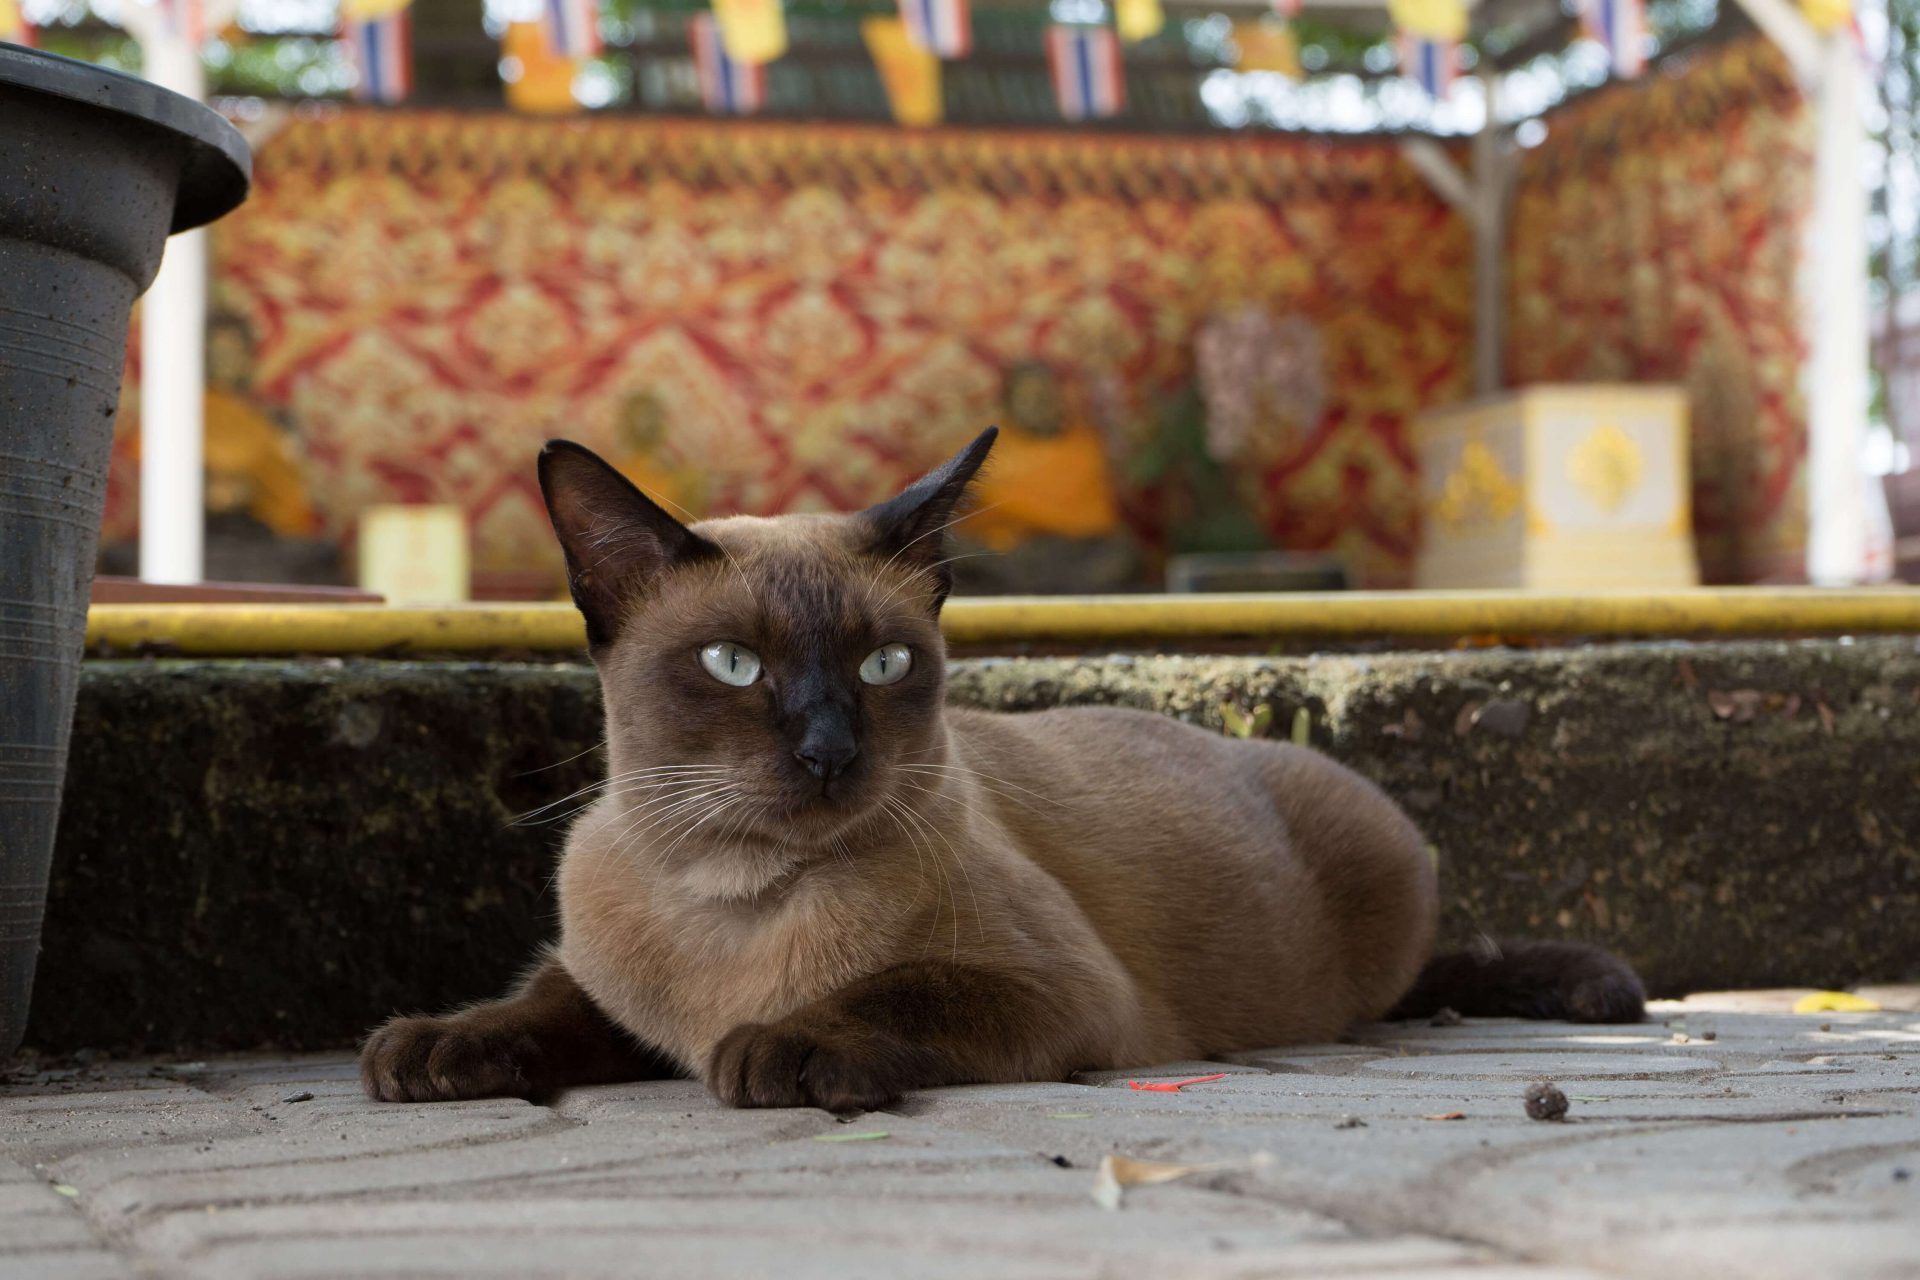 Burma Katze liegt entspannt auf dem Boden